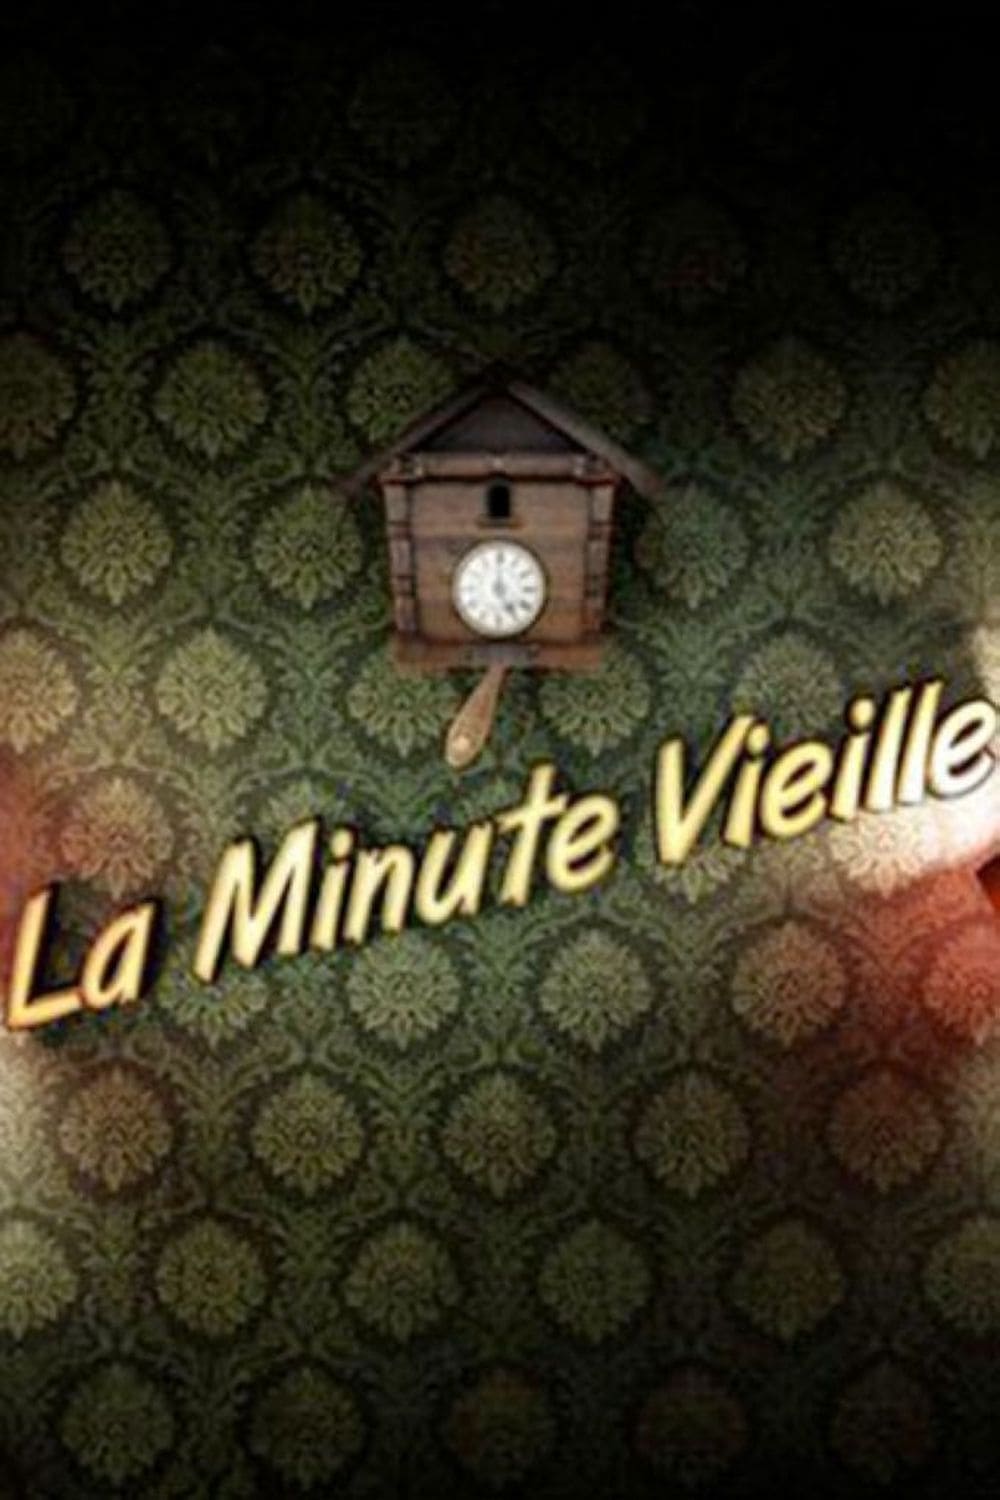 La minute vieille (2012)